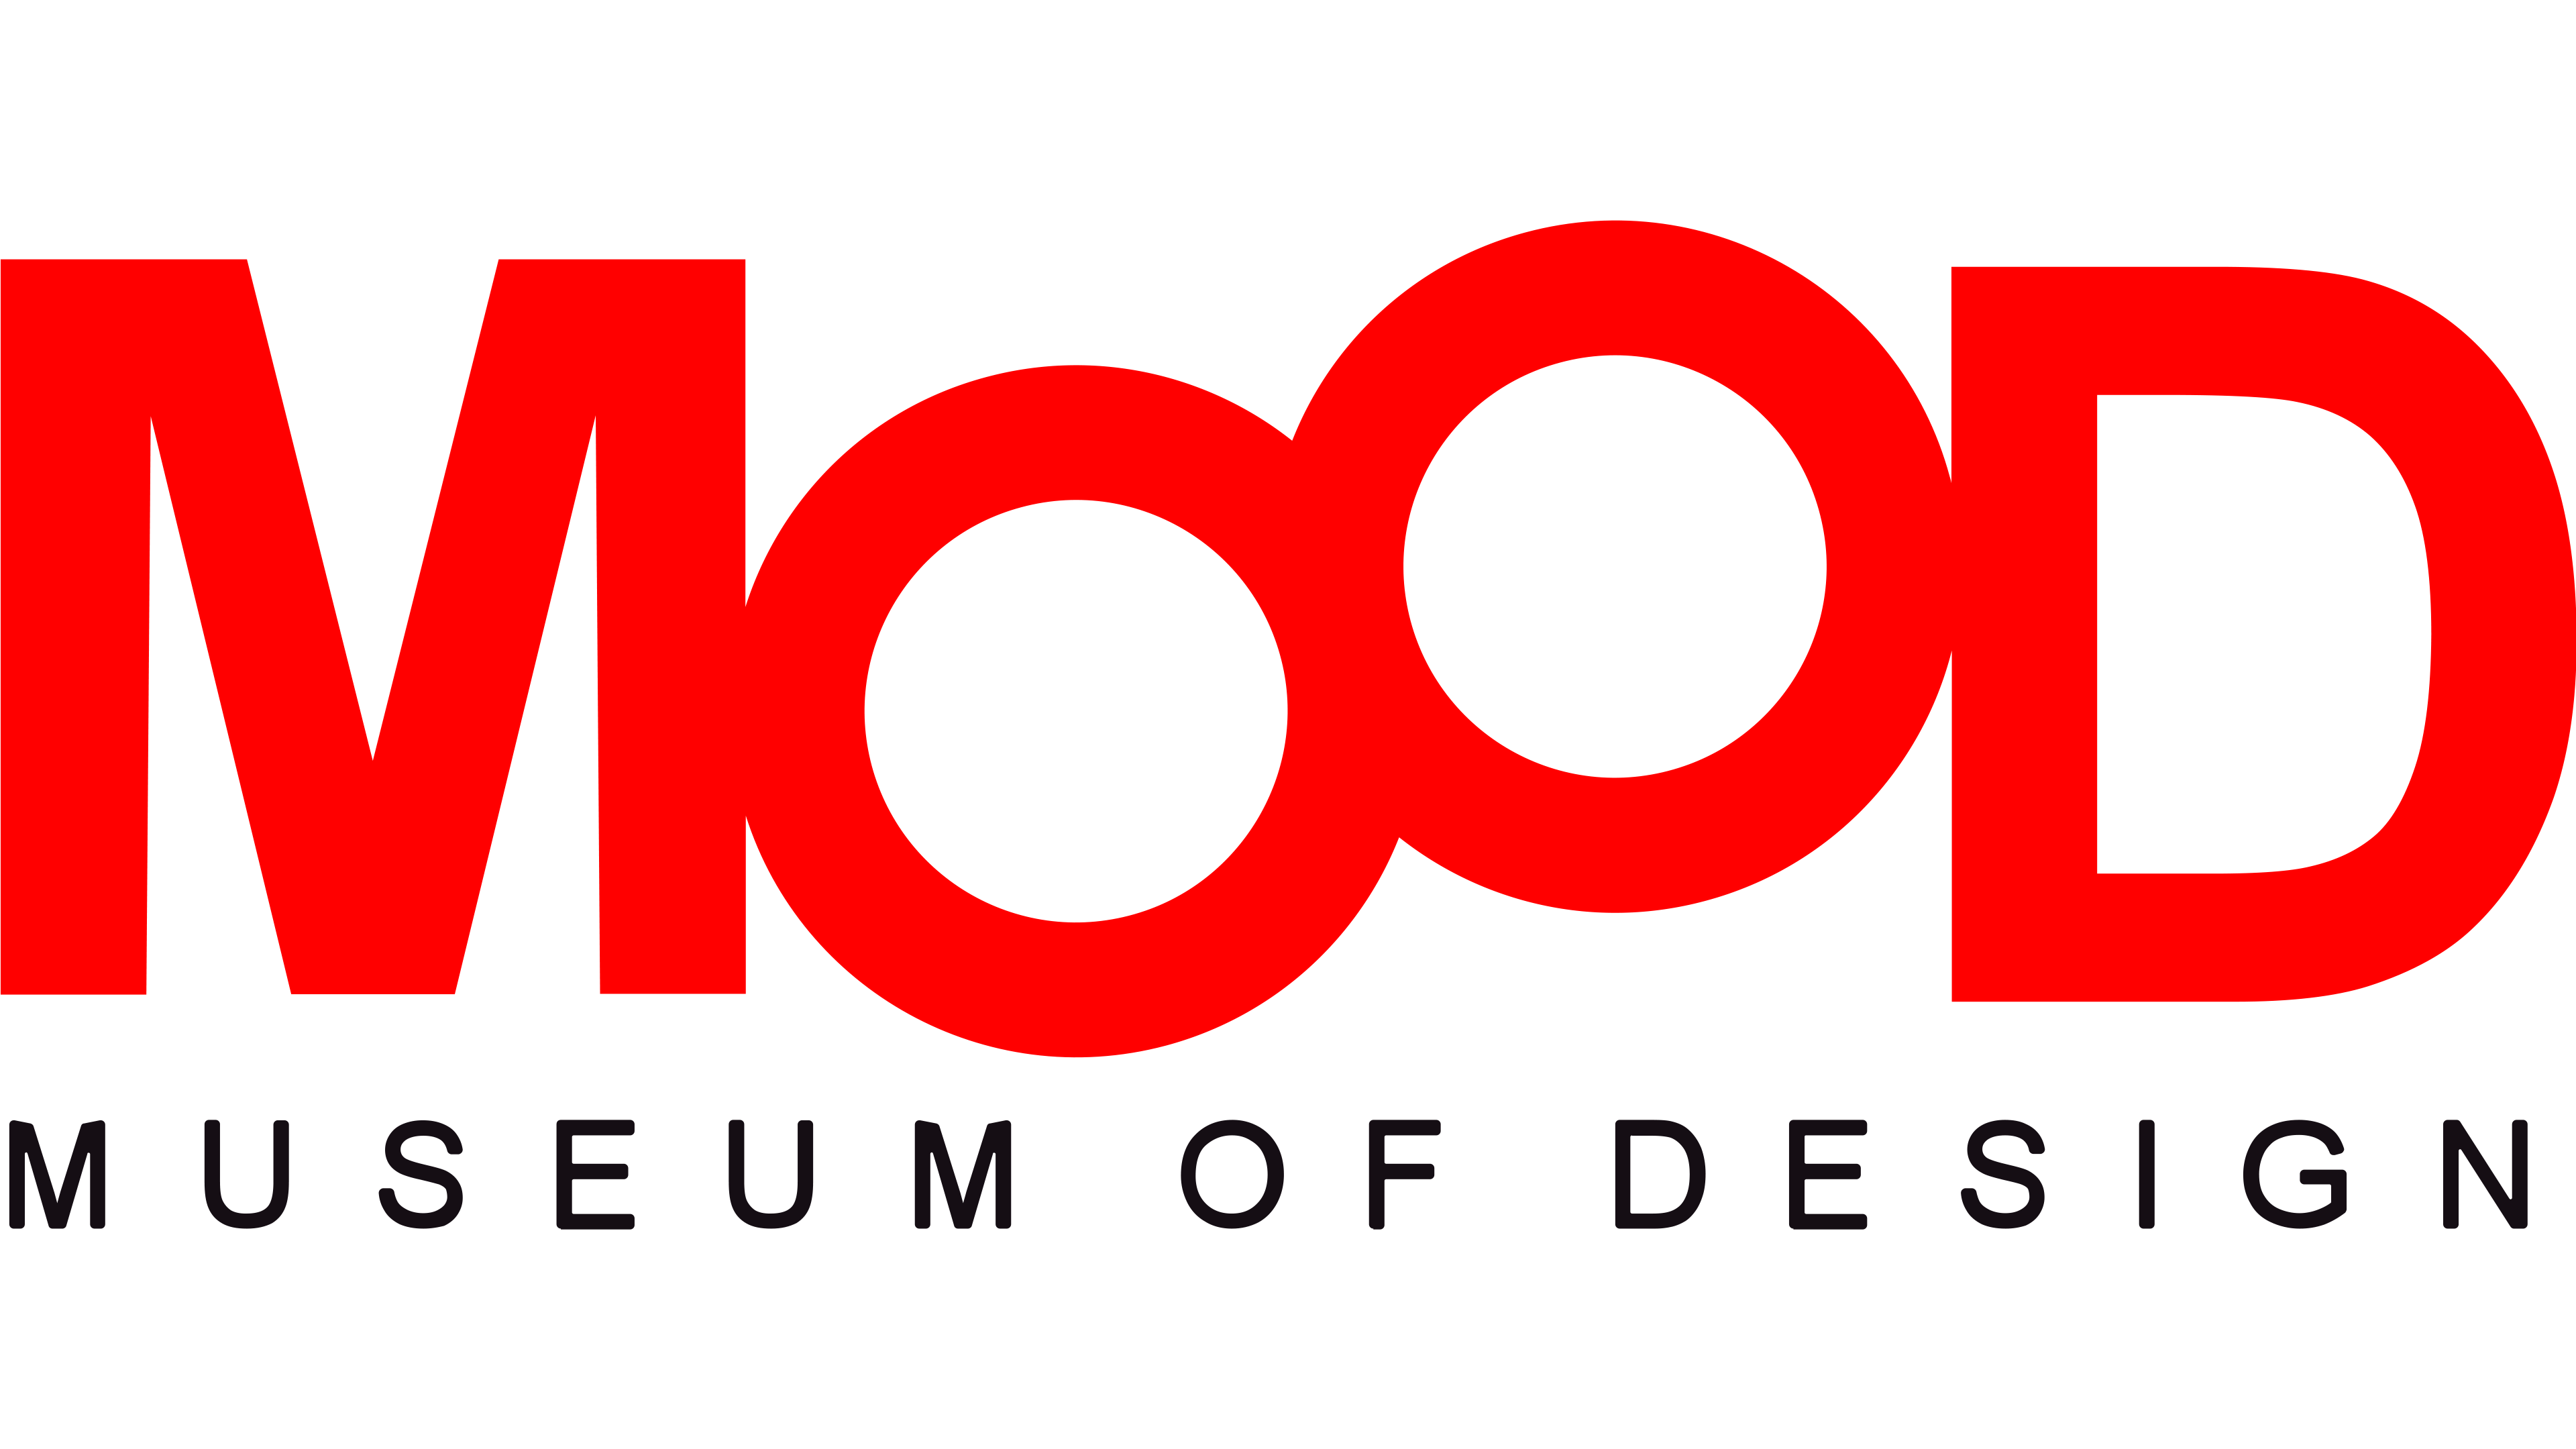 Museum of Design